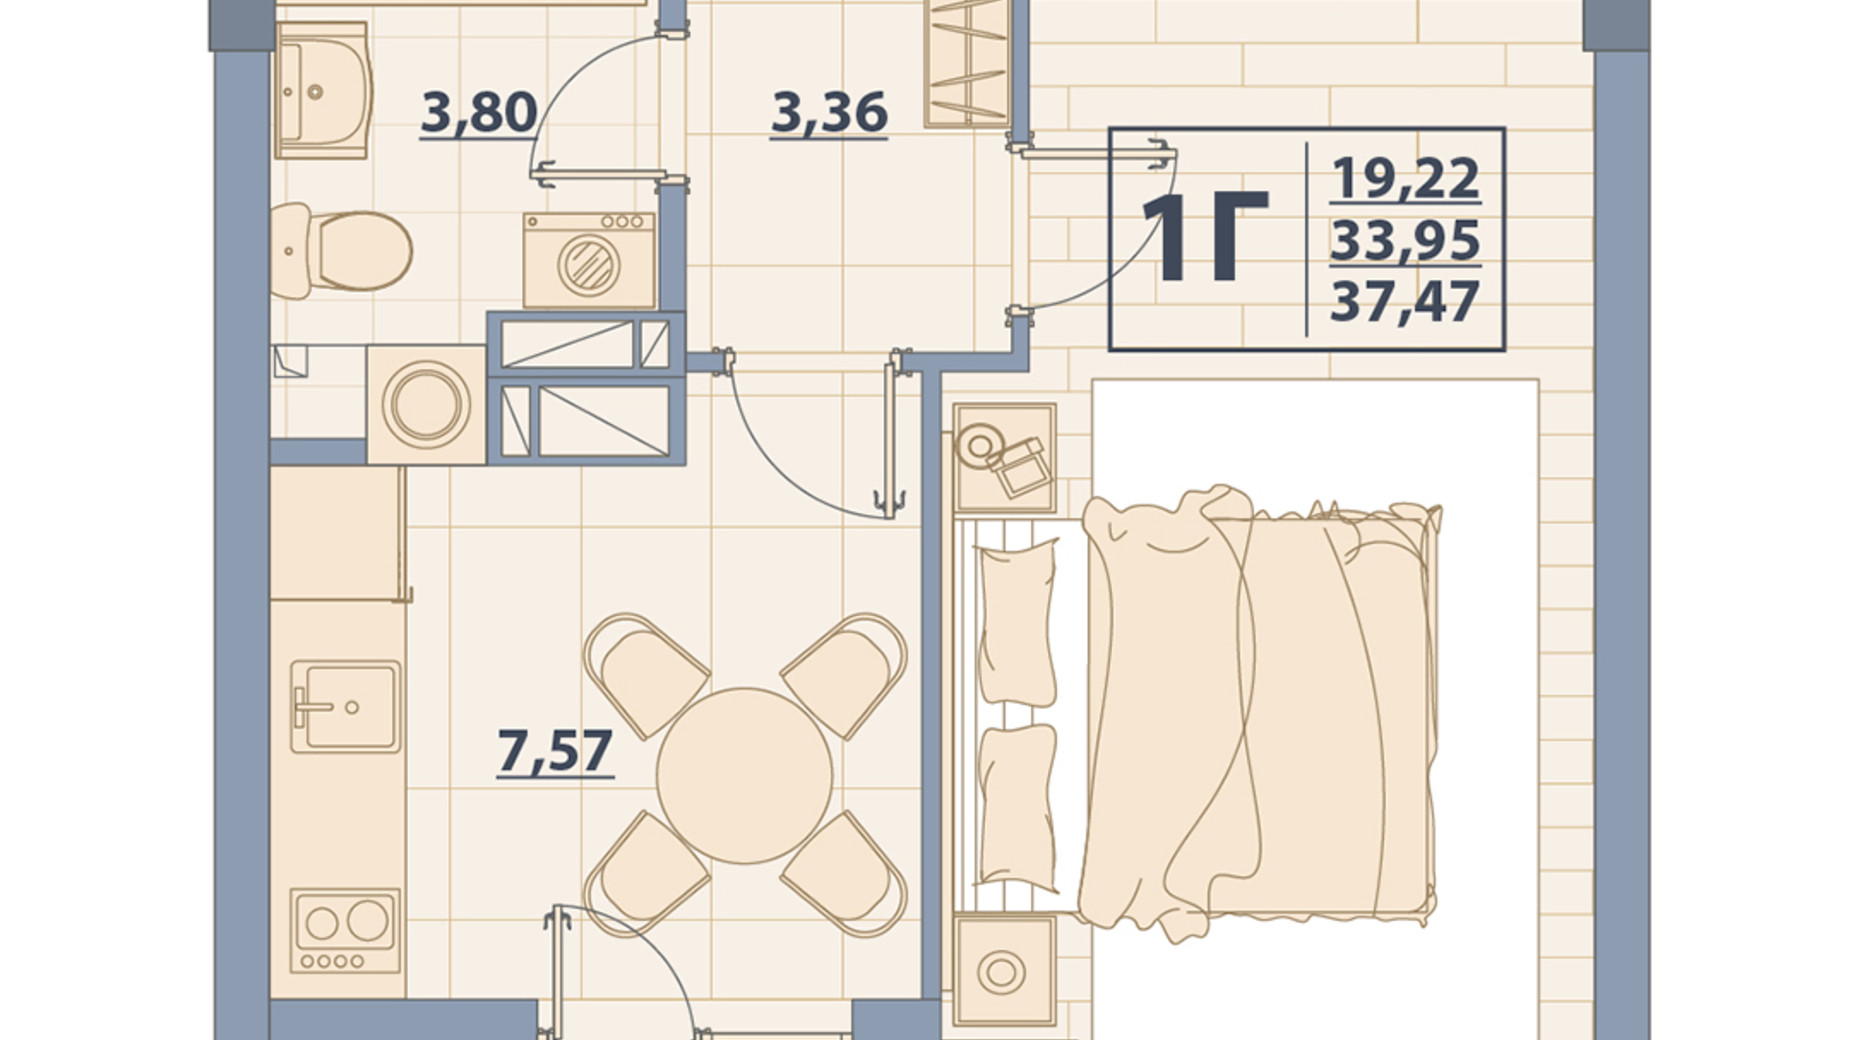 Планировка 1-комнатной квартиры в ЖК Centr City 37.47 м², фото 579640